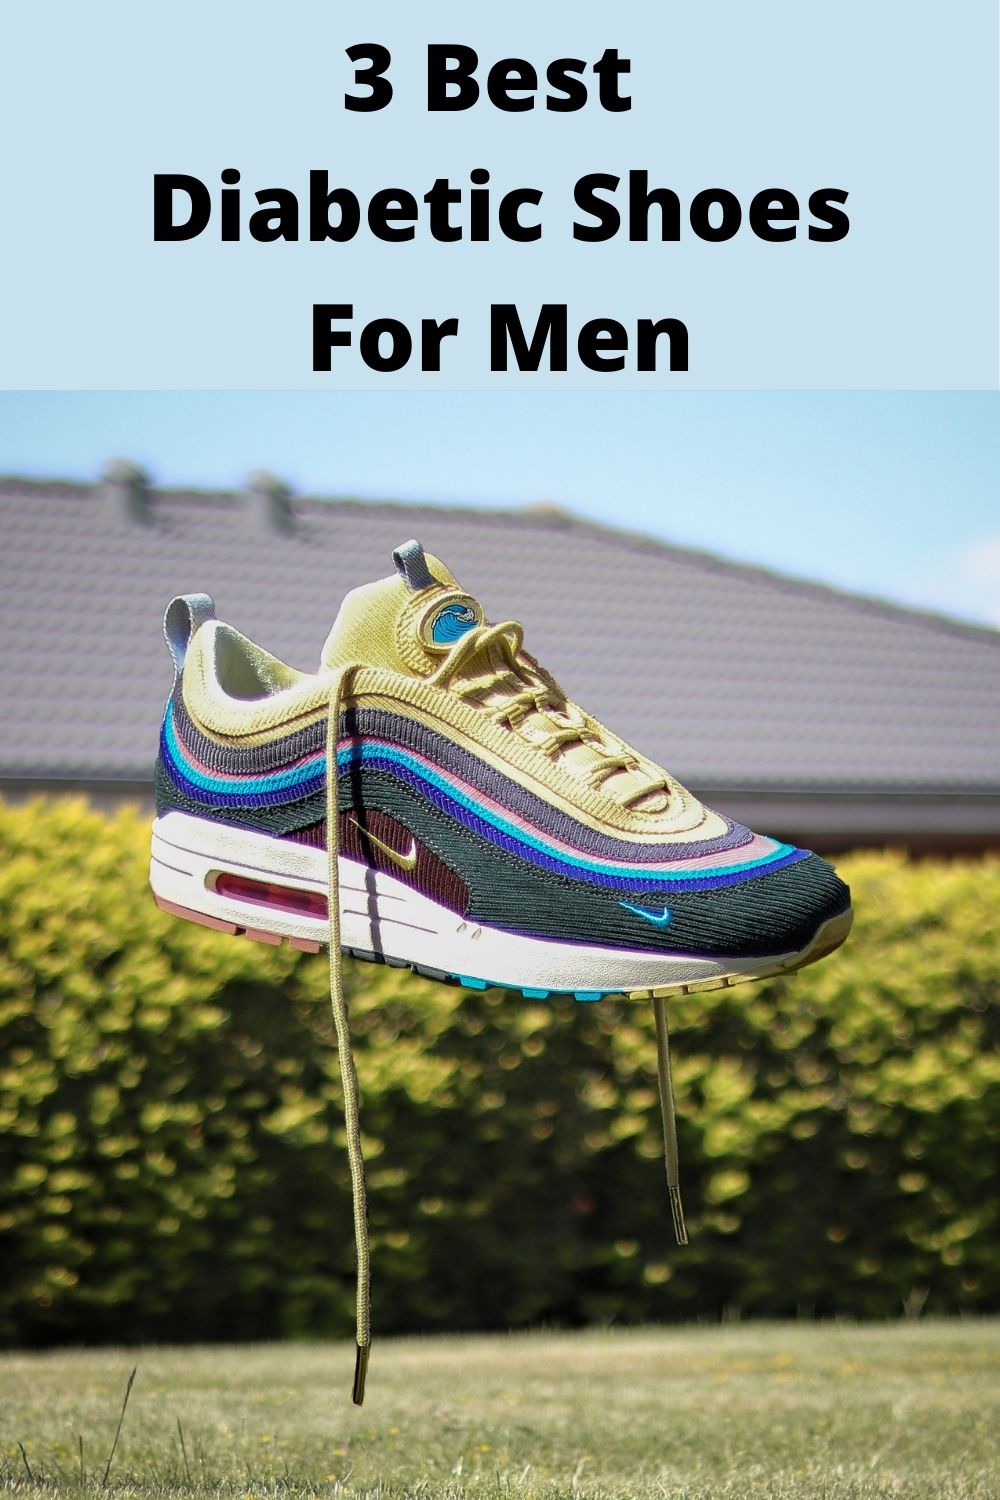 3 Diabetic Shoes For Men - Image of Diabetic Shoe